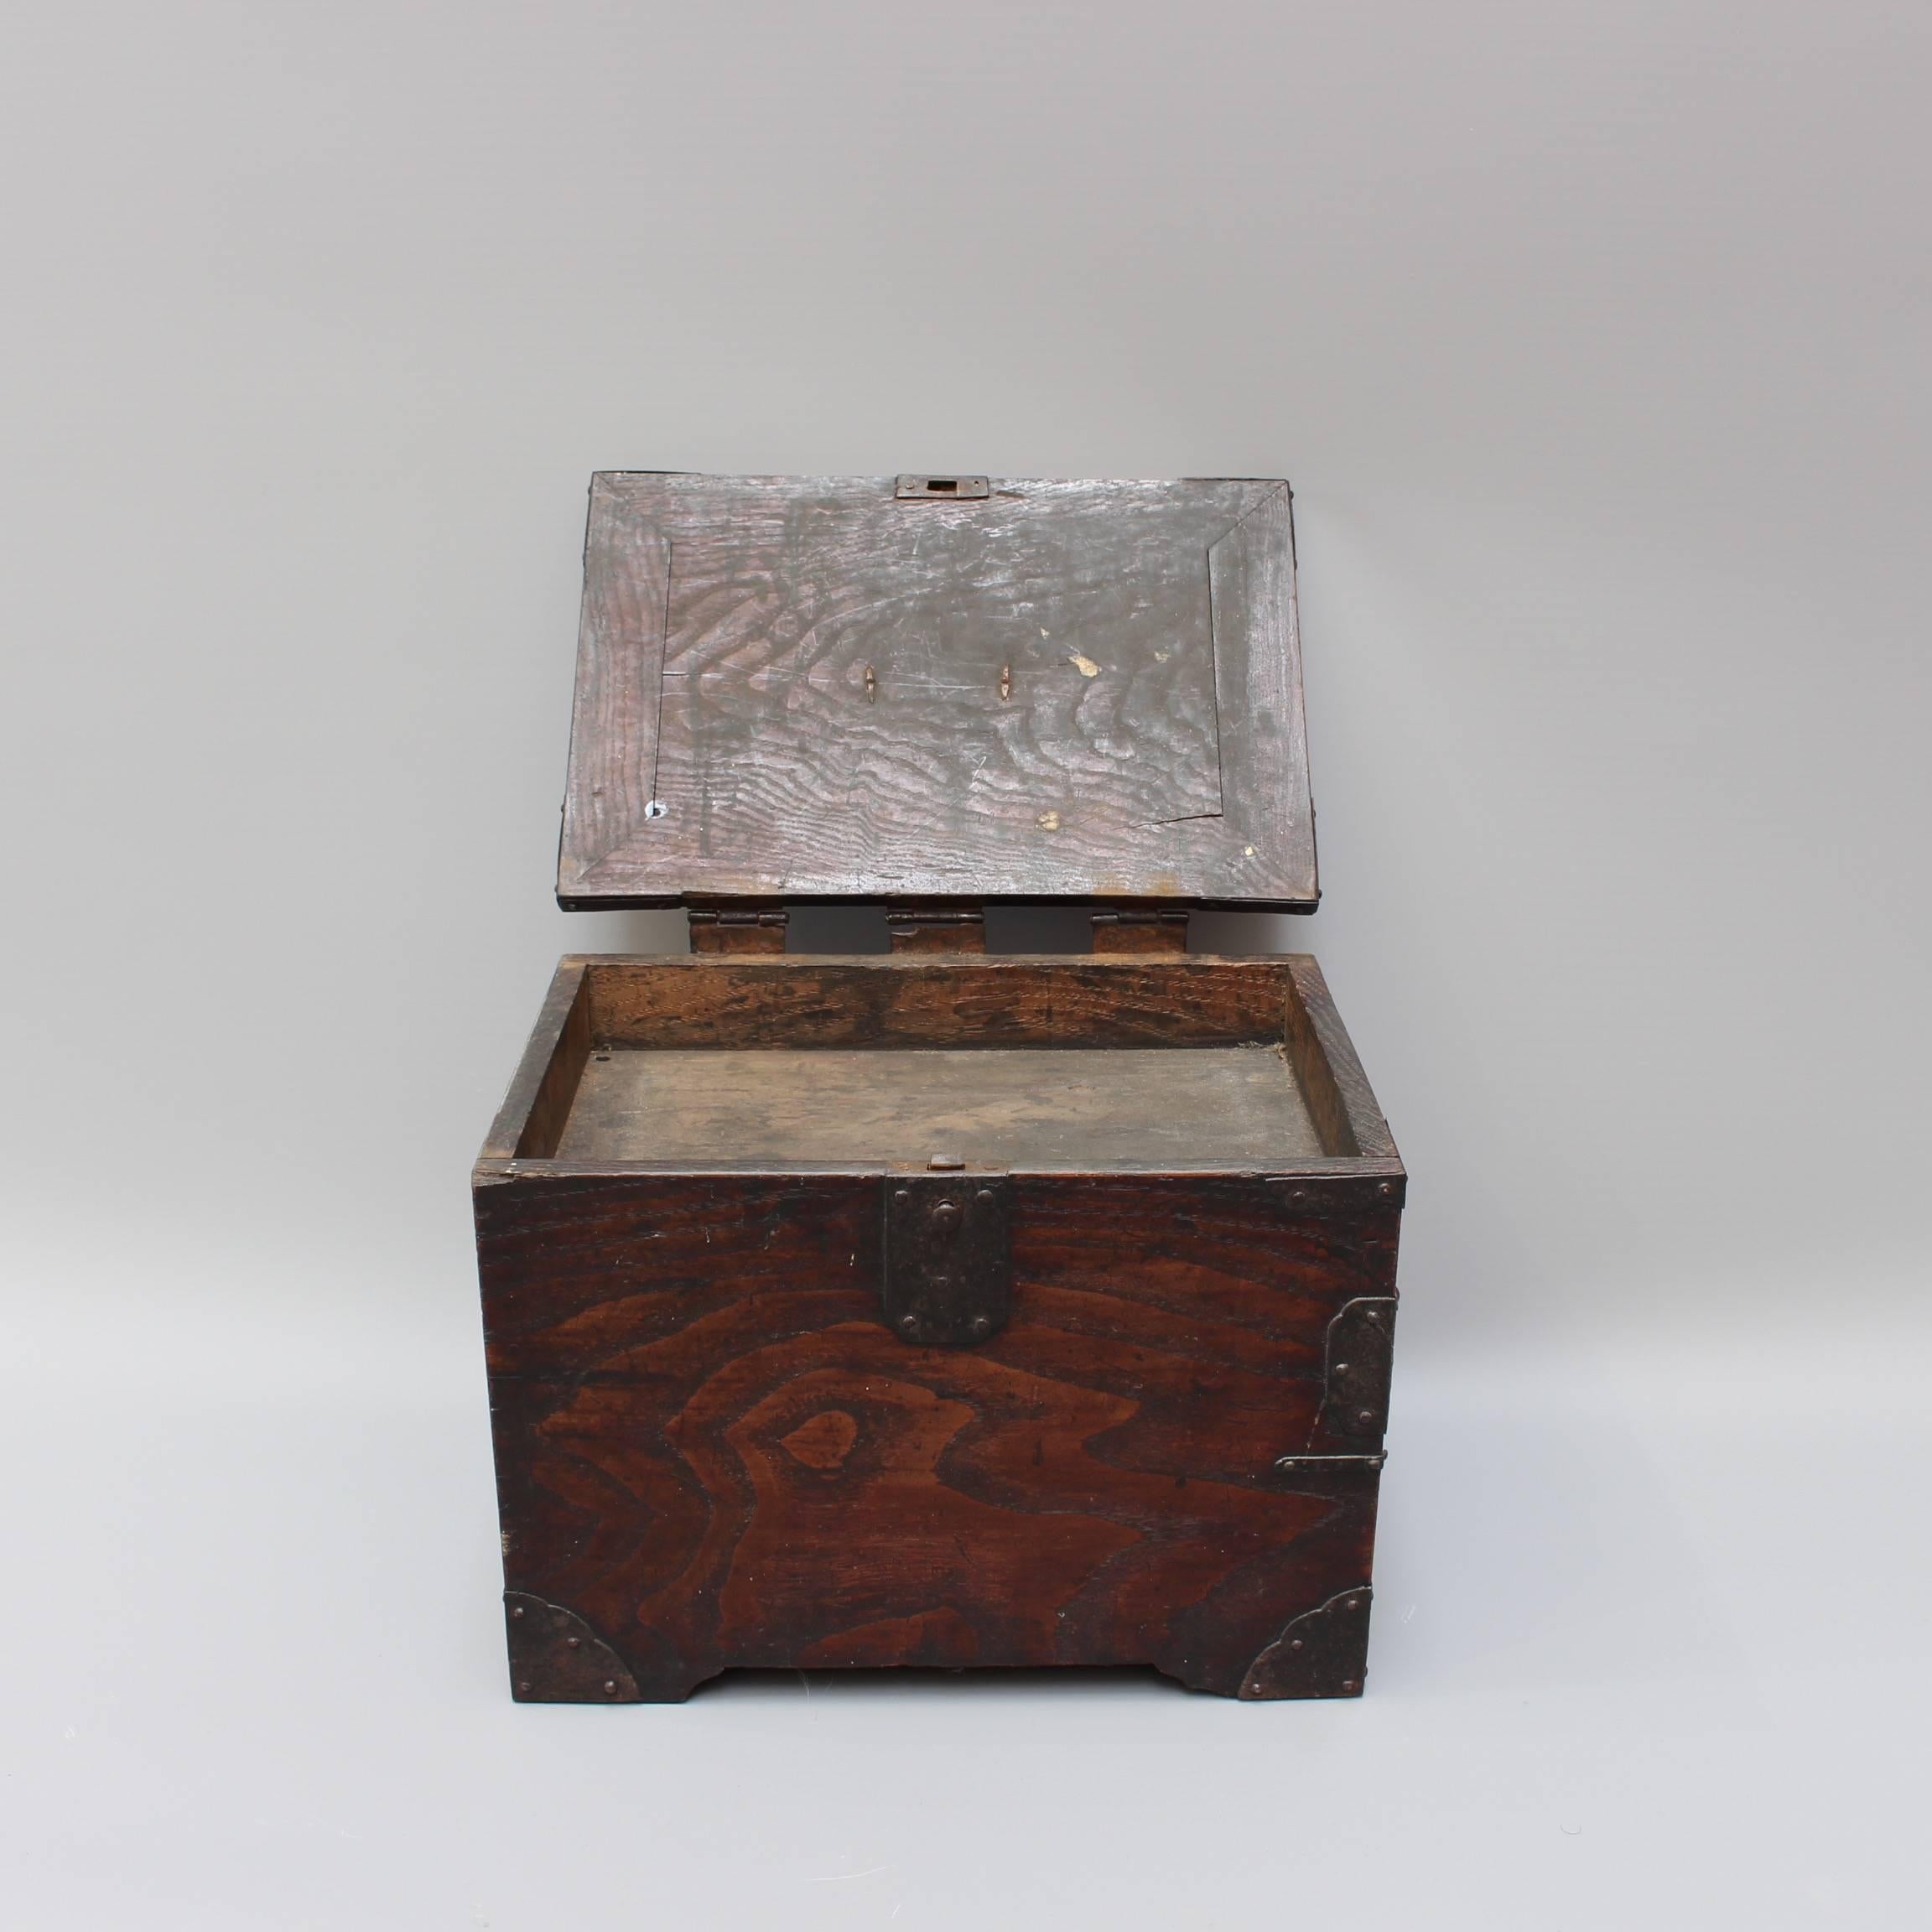 Antique Japanese Wooden Writing Box with Decorative Hardware 'Meiji Era' 6